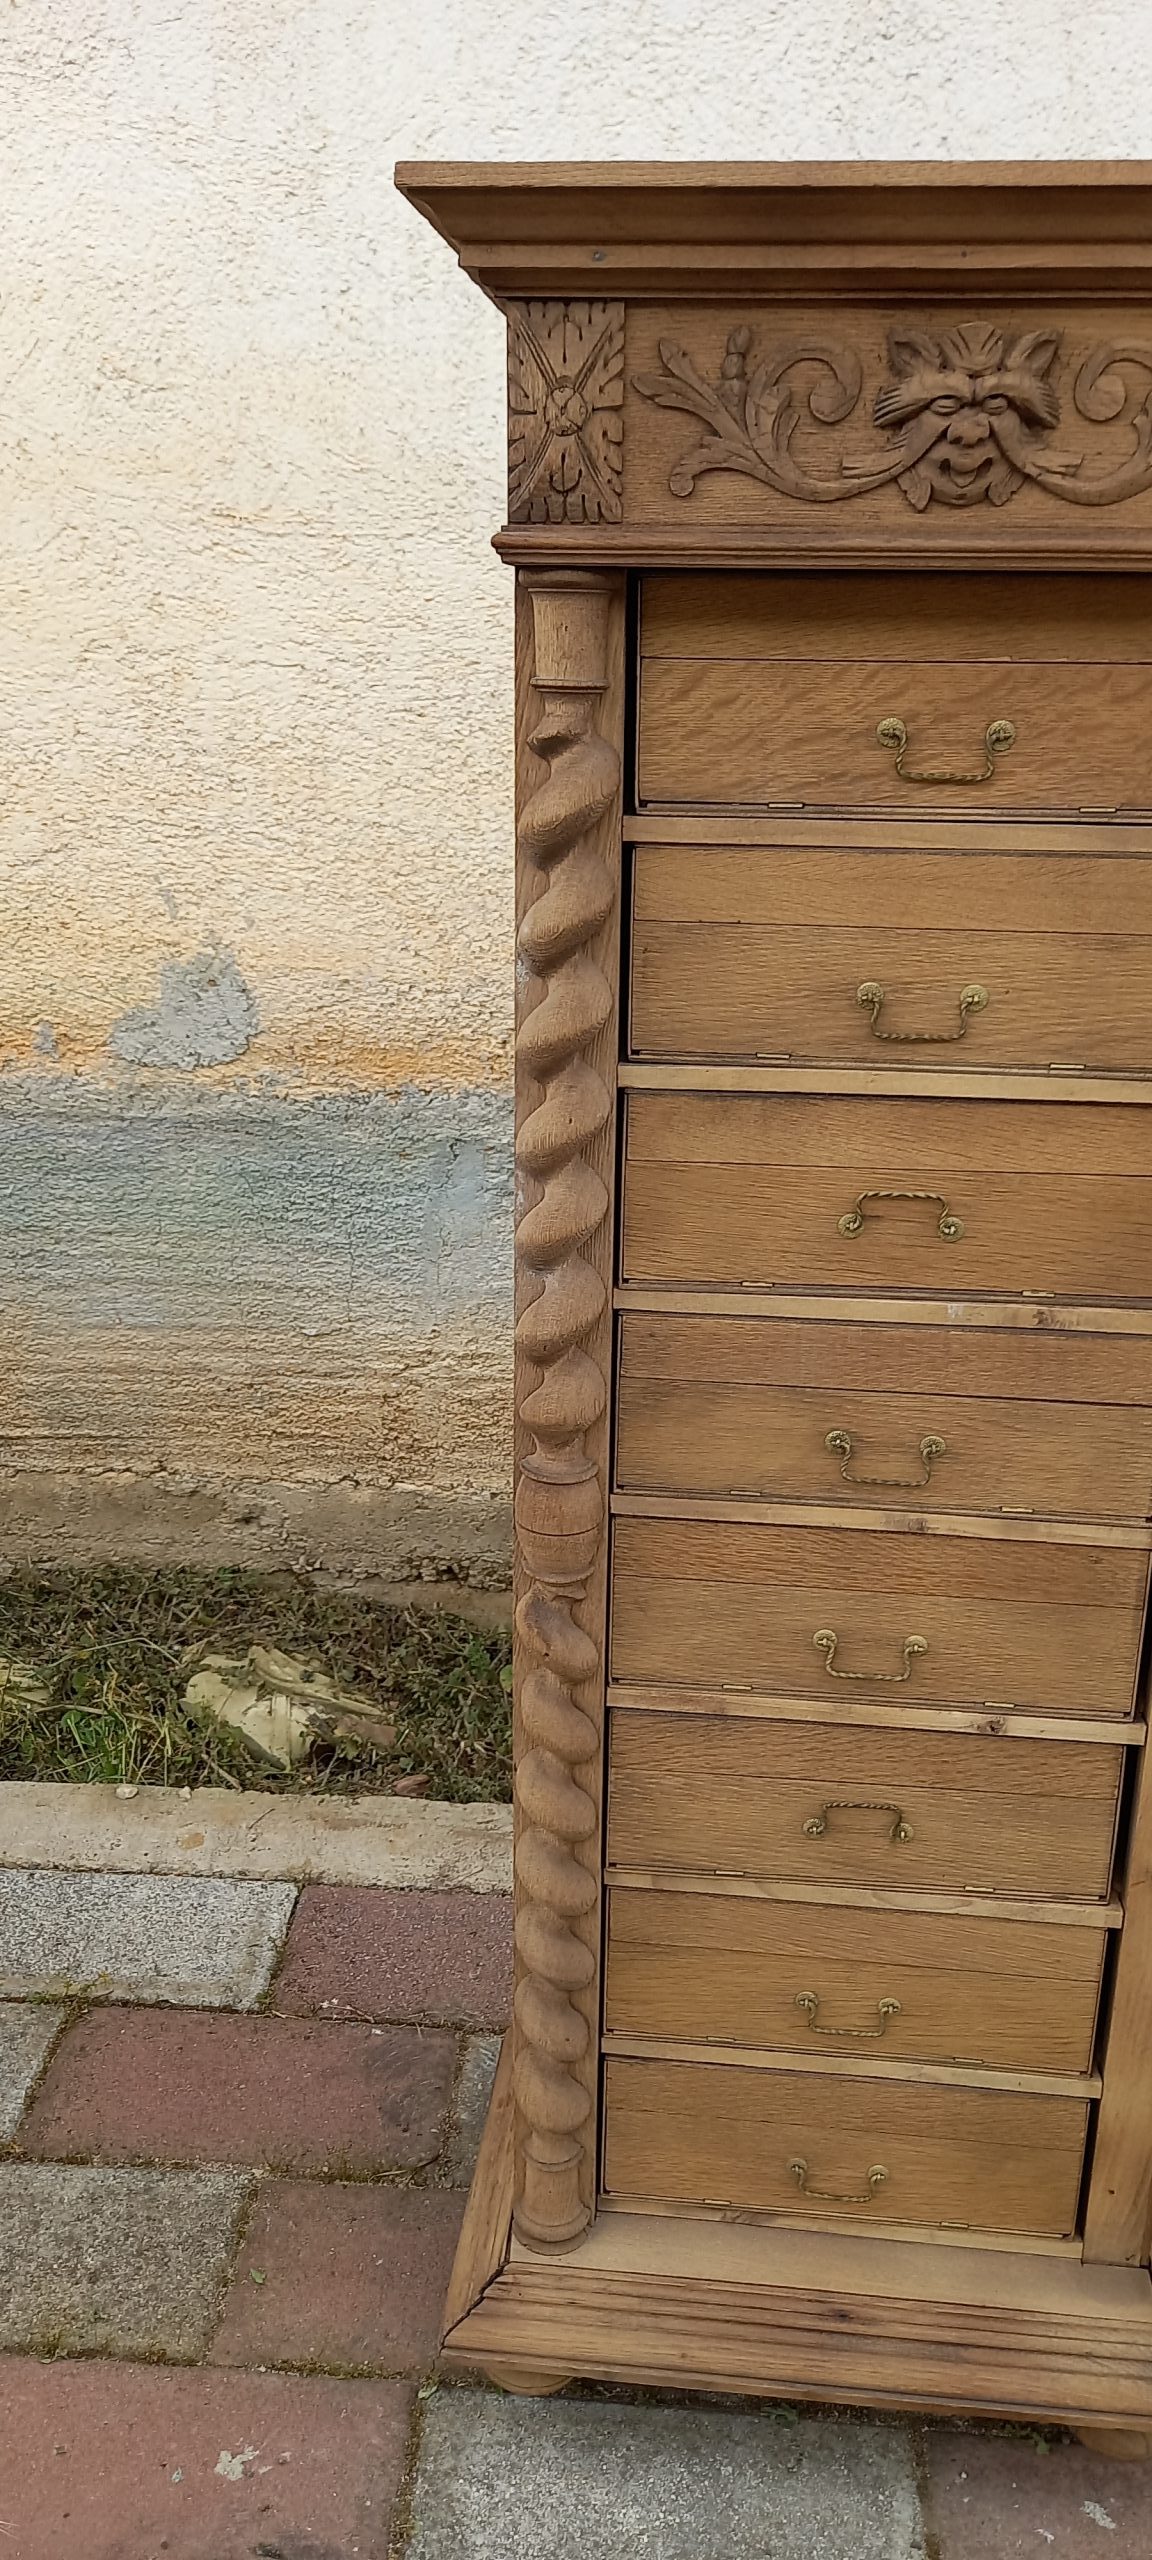 παλιό ξύλινο ερμάρι από καρυδιά, παλιο ντουλάπι, παλιό έπιπλο αποθήκευσης με οχτώ συρτάρακια-ντουλαπάκια που βγαίνουν και ξεδιπλώνουν,σκαλίσματα στα πλαινά και στο πάνω μέρος και αναδιπλούμενη πλαινή κολώνα με κλειδαριά (λειπει το κλειδί)